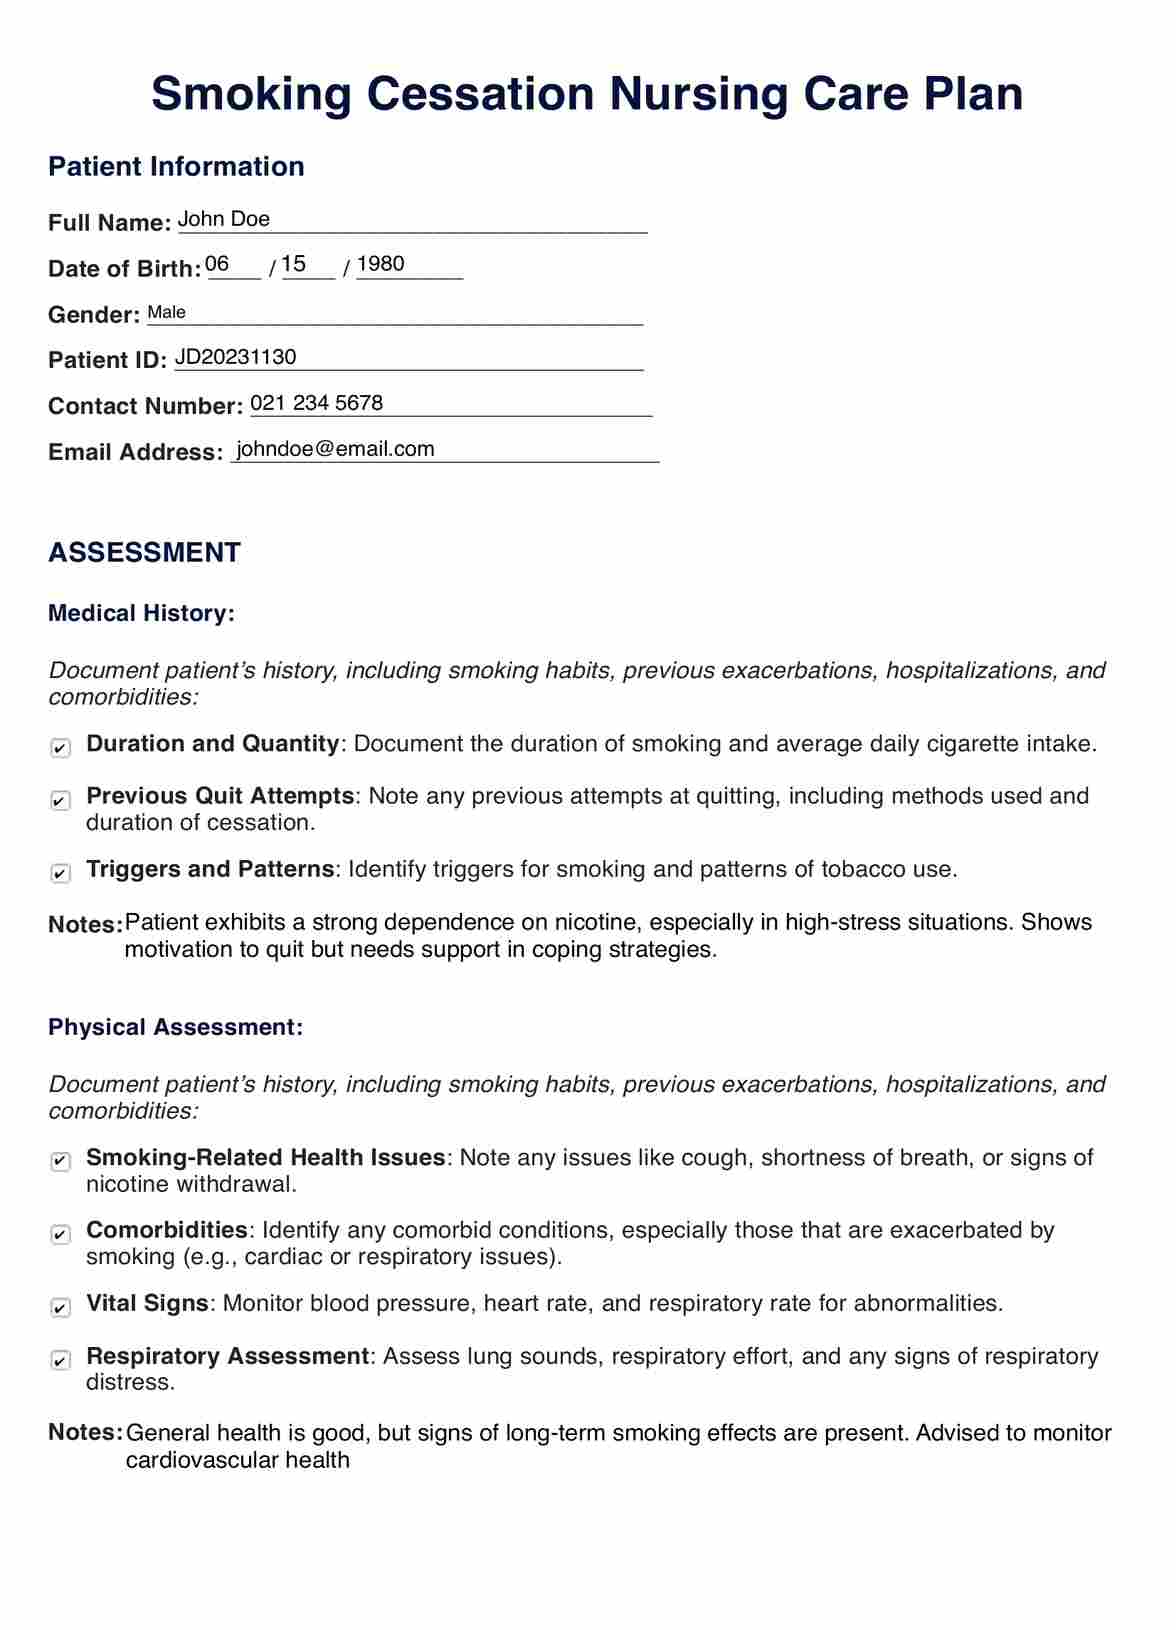 Smoking Cessation Nursing Care Plan PDF Example